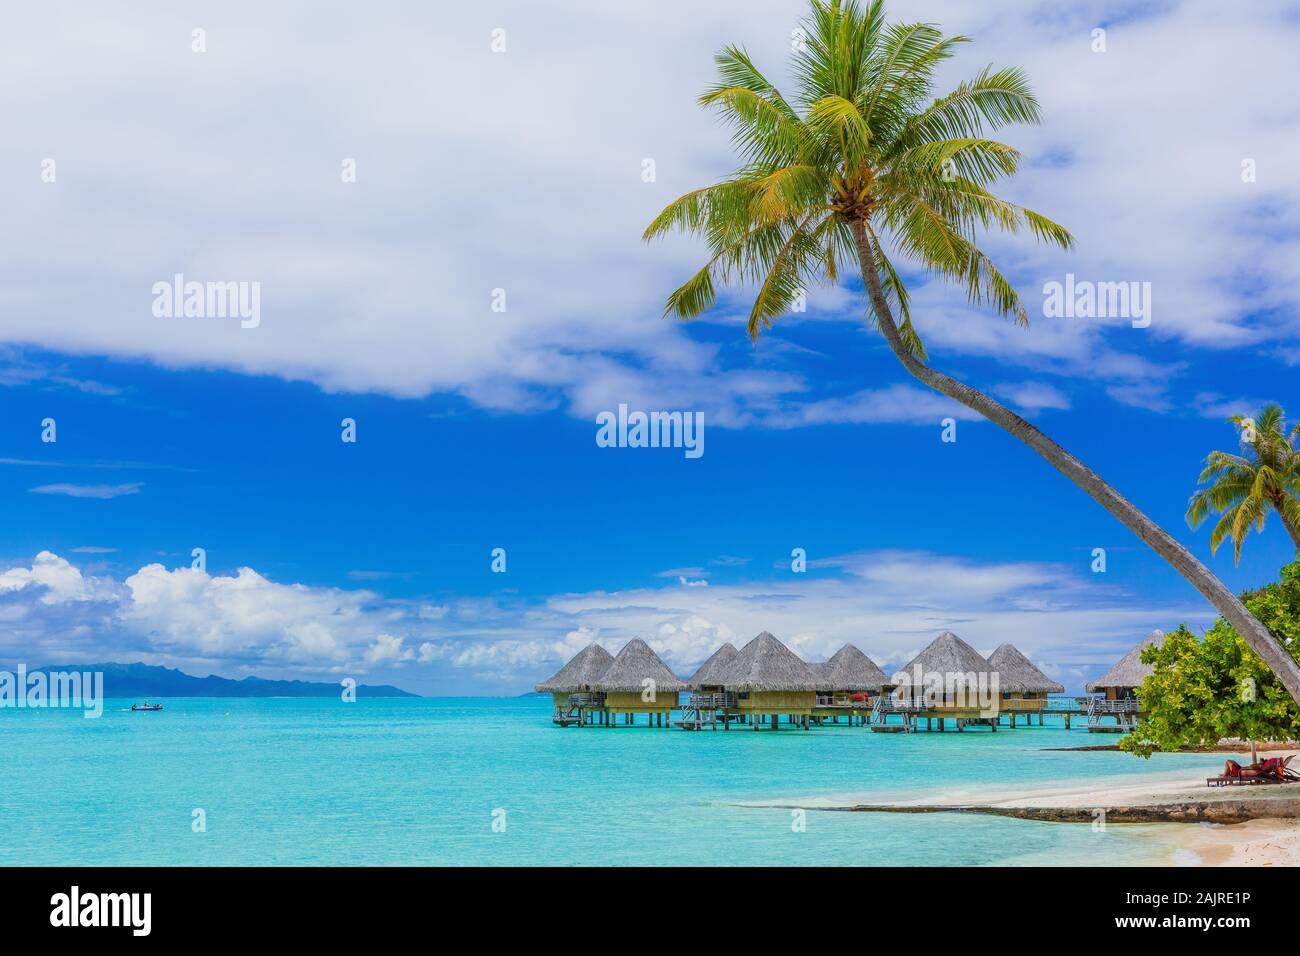 Bungalow sull'acqua del resort tropicale, isola di Bora Bora, vicino a Tahiti, Polinesia francese. Foto Stock